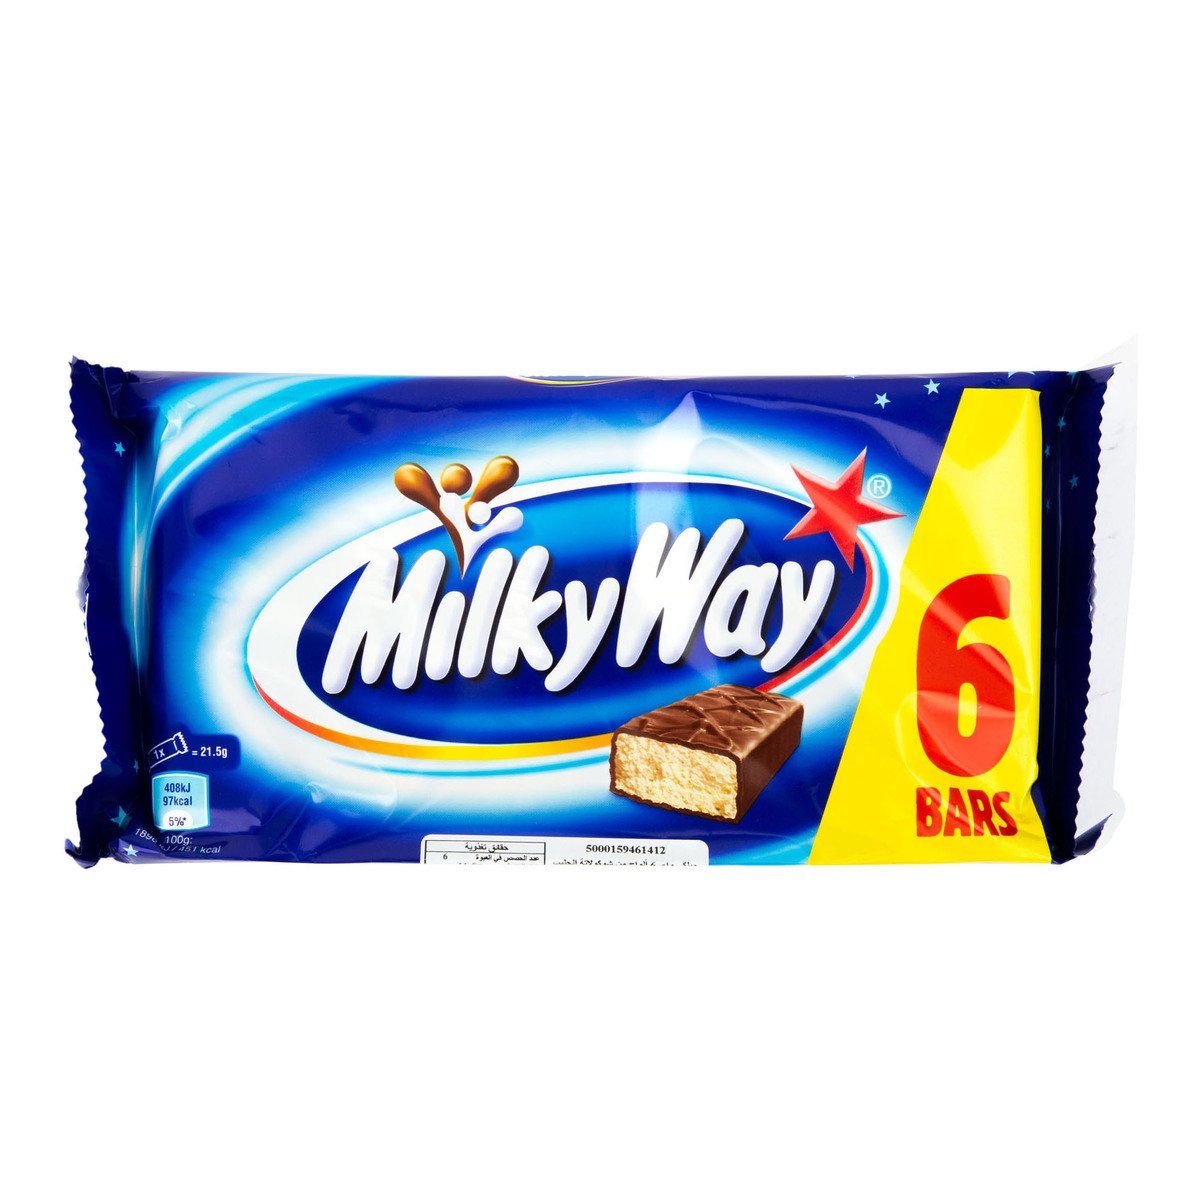 Buy Milky Way Chocolate 6 x 21.5 g Online at Best Price | Covrd Choco.Bars&Tab | Lulu UAE in UAE